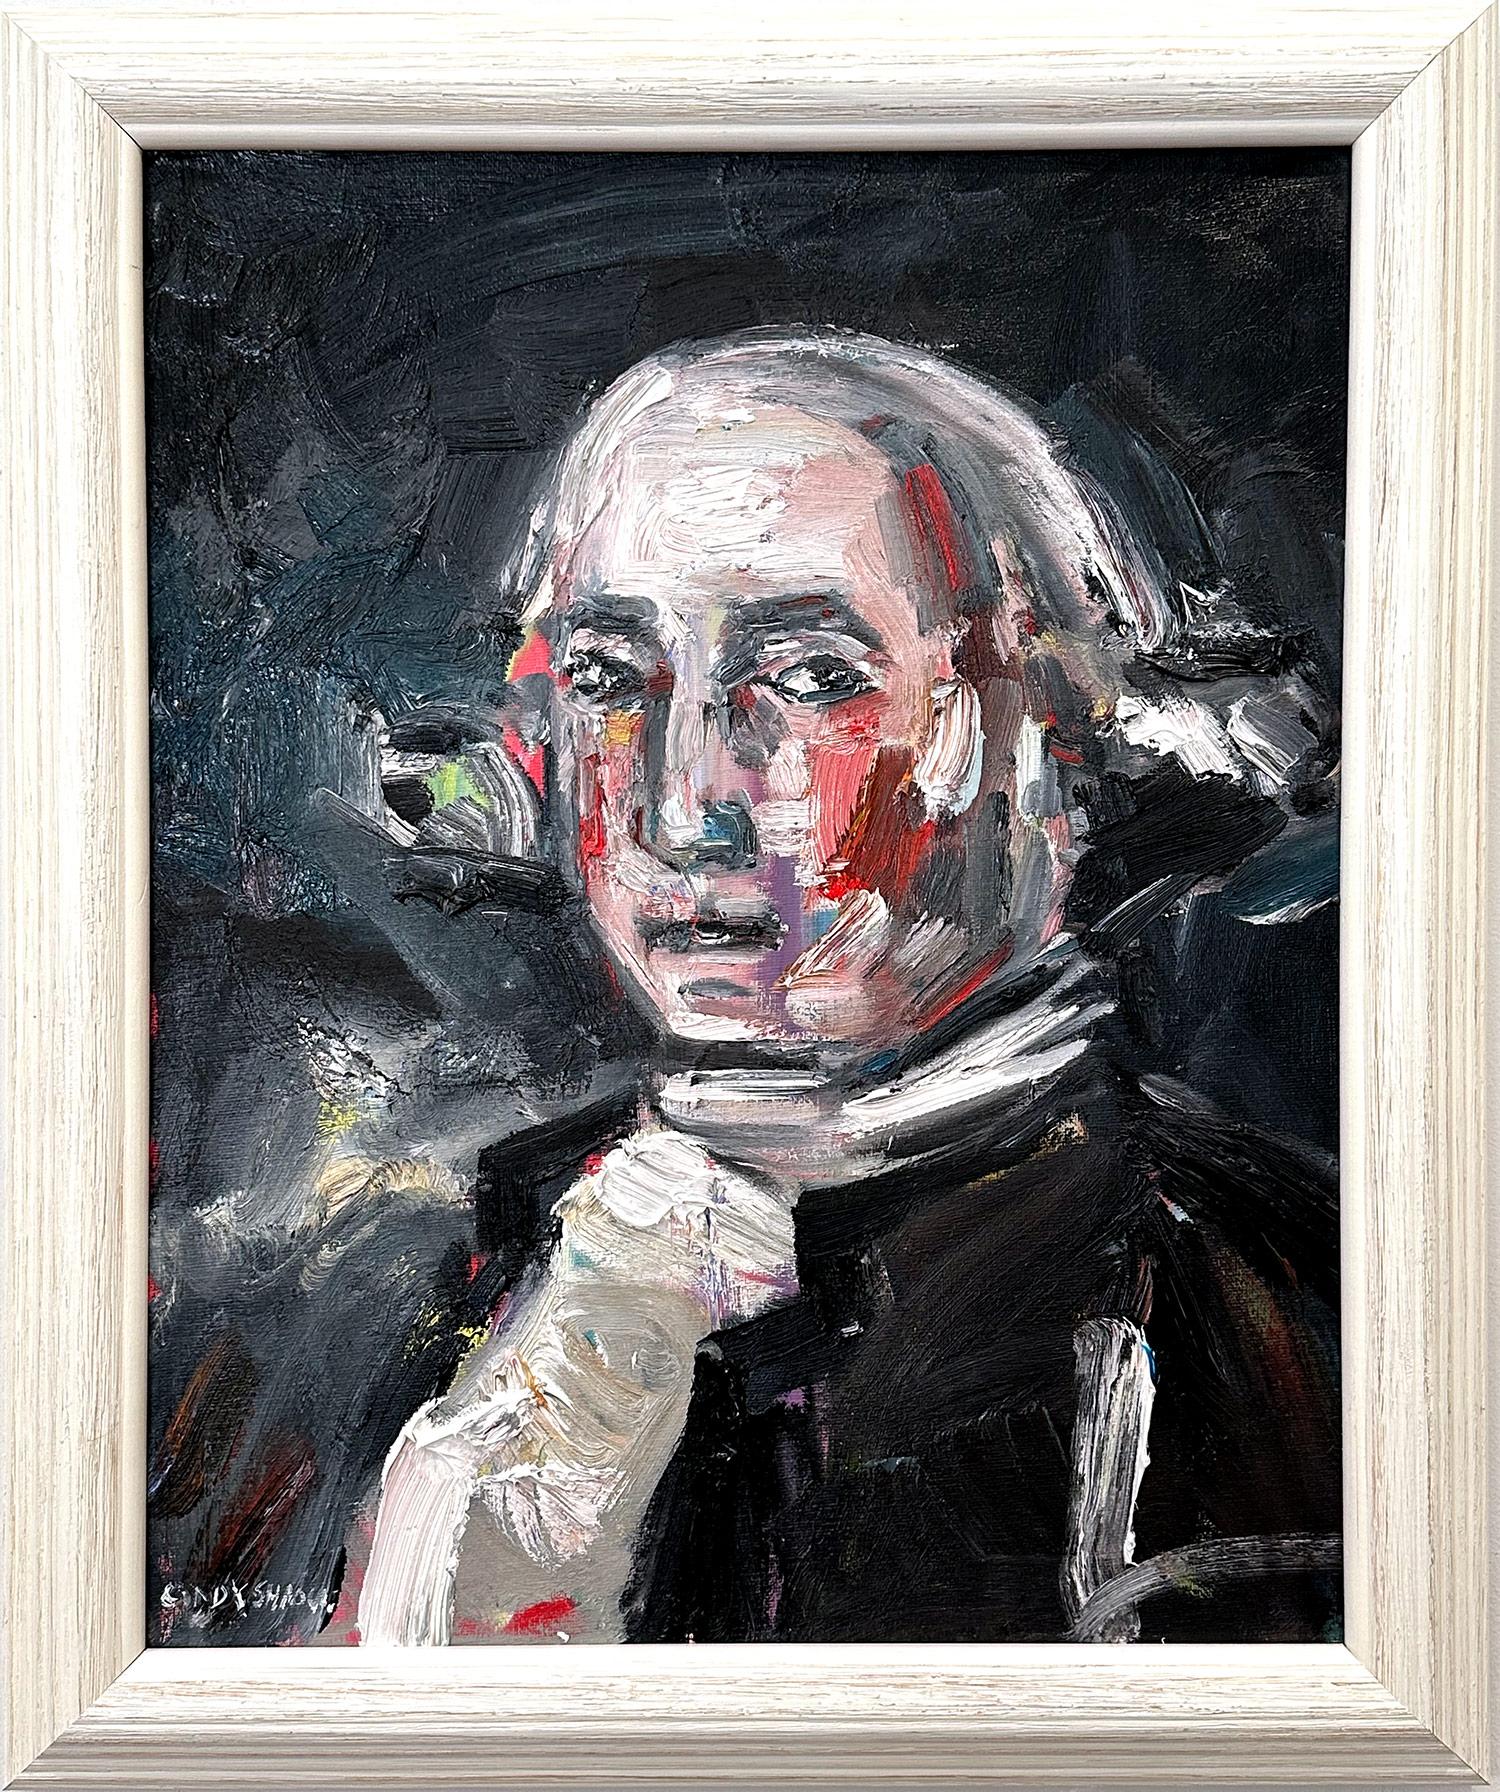 Abstract Painting Cindy Shaoul - Peinture à l'huile abstraite impressionniste sur toile « Washington » de George Washington